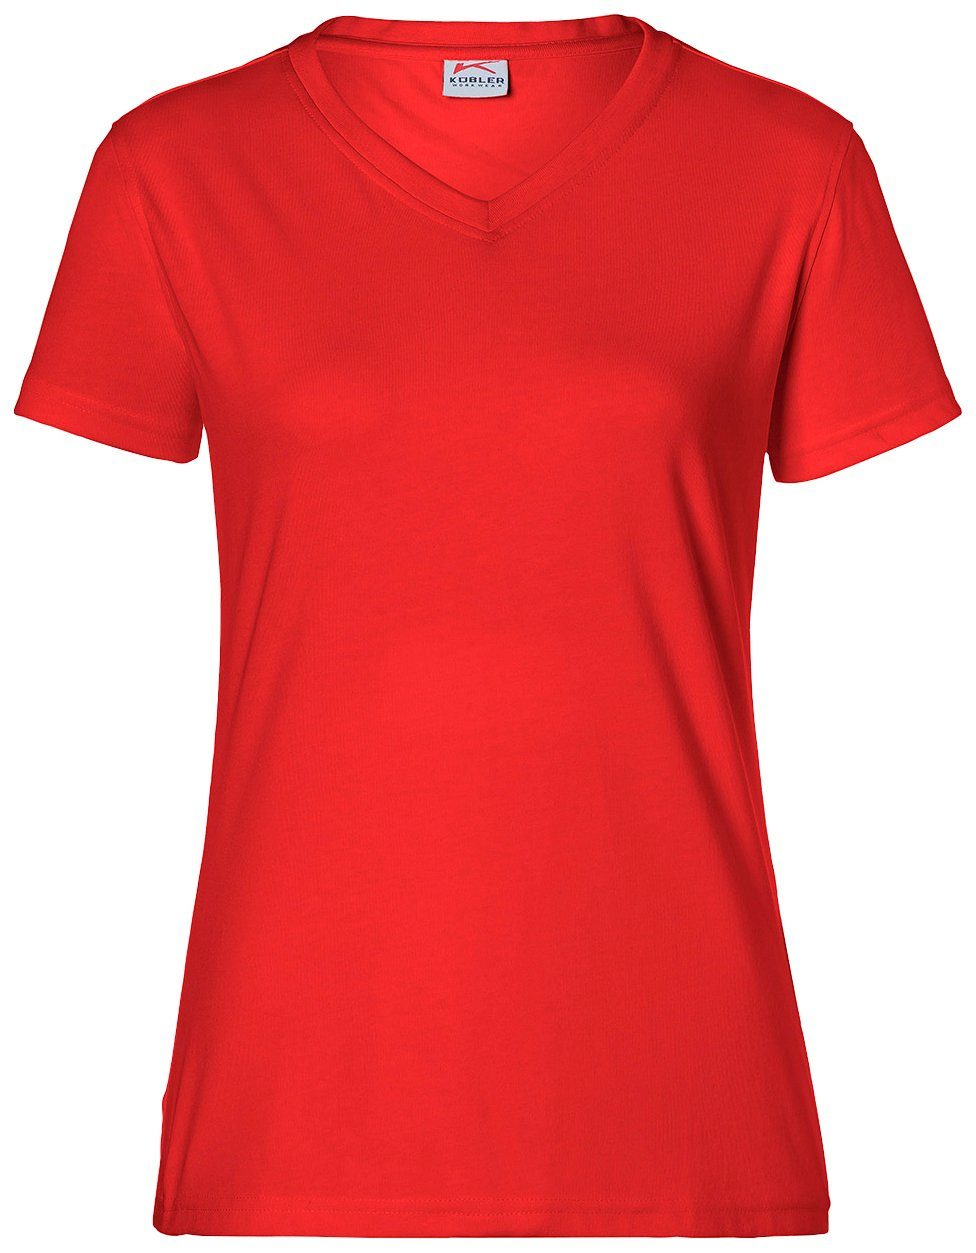 Kübler T-Shirt für Damen, Größe: XS - 4XL kaufen | OTTO